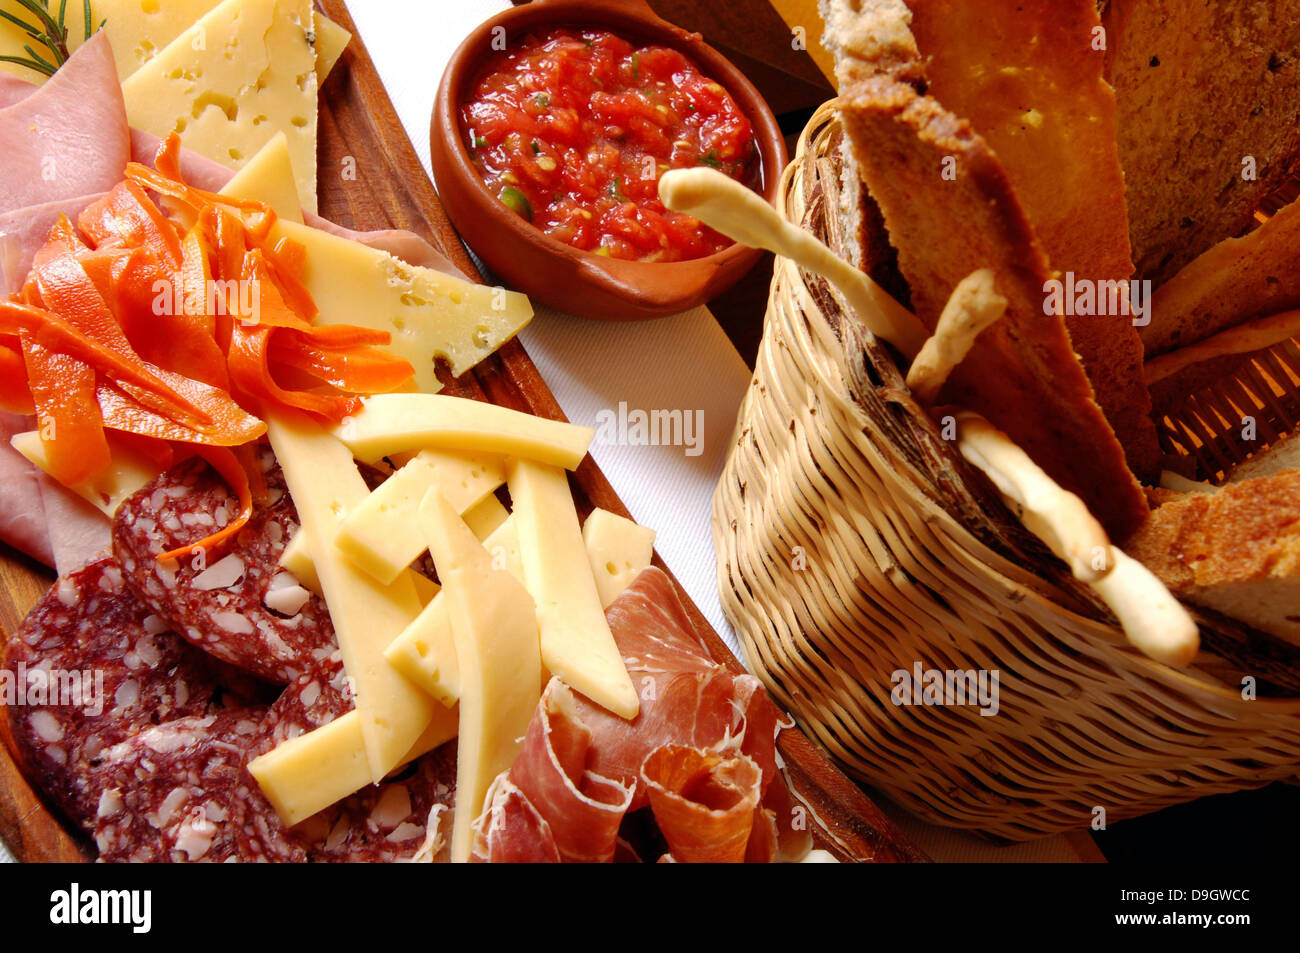 Anden-Küche. Stilleben mit verschiedenen Anden gastronomische Produkte, Aufschnitt von Lama, Käse und Gemüse. Stockfoto